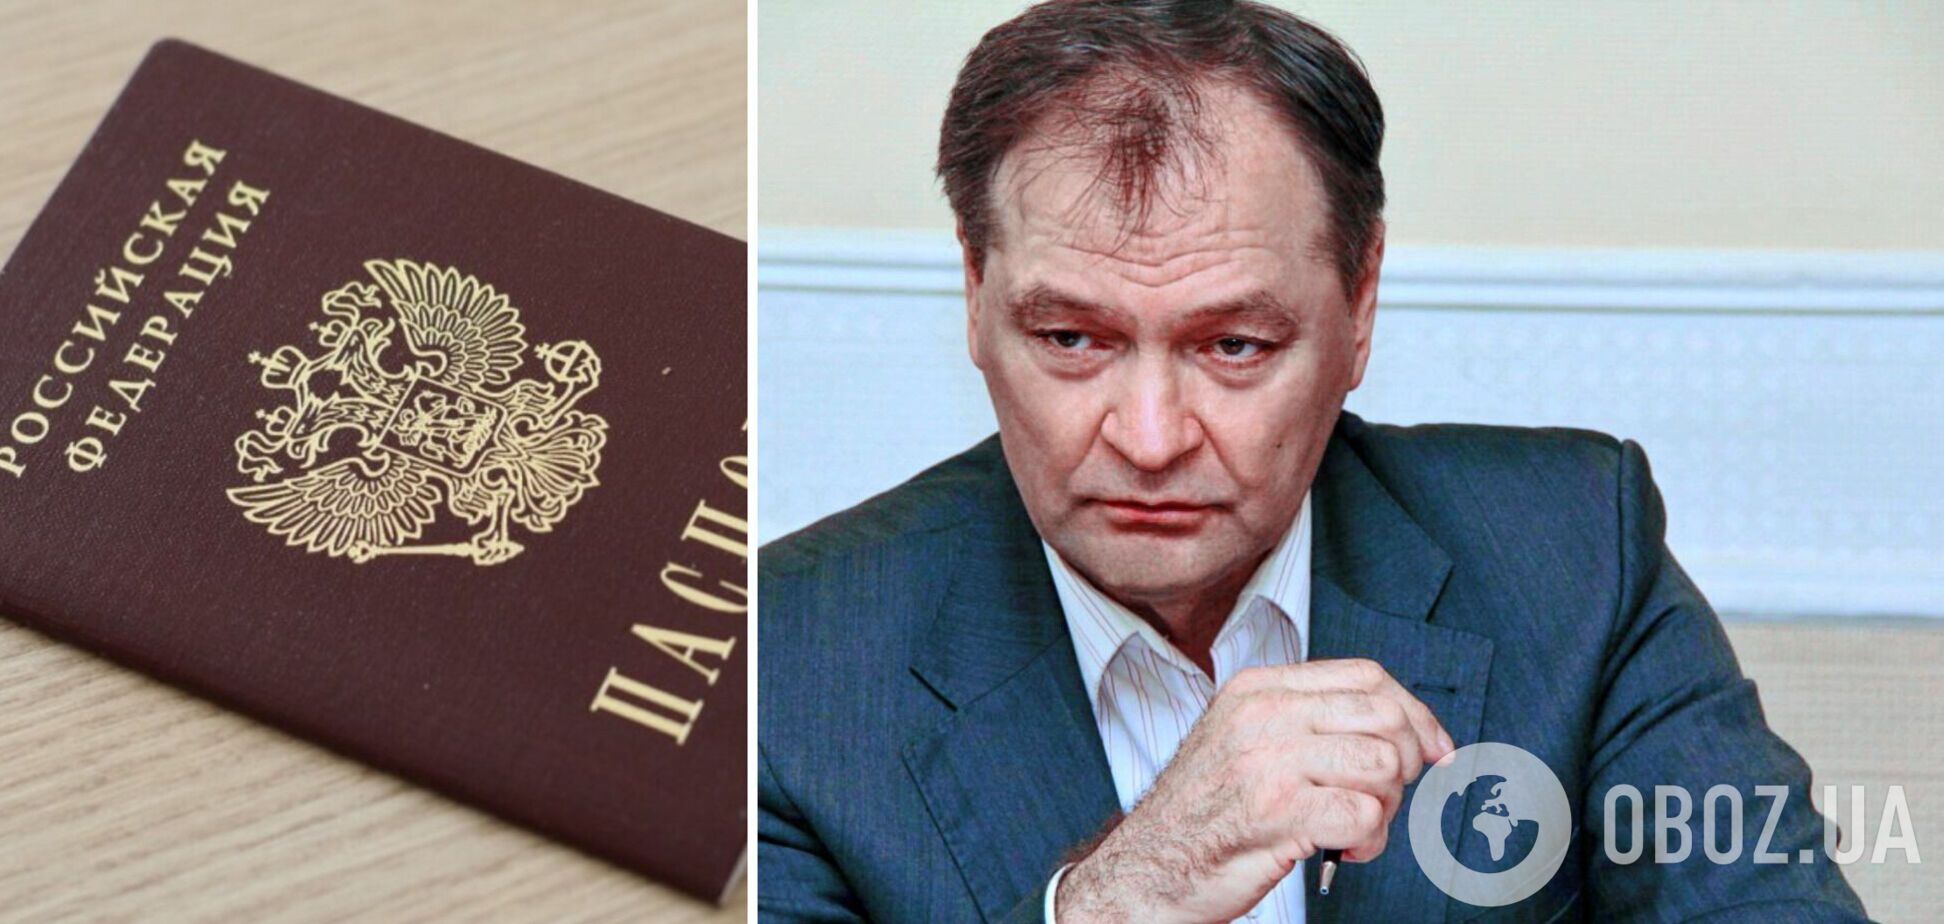 ЗМІ знайшли у нардепа ОПЗЖ російський паспорт: його фірми звинувачували у диверсіях проти ЗСУ. Відео